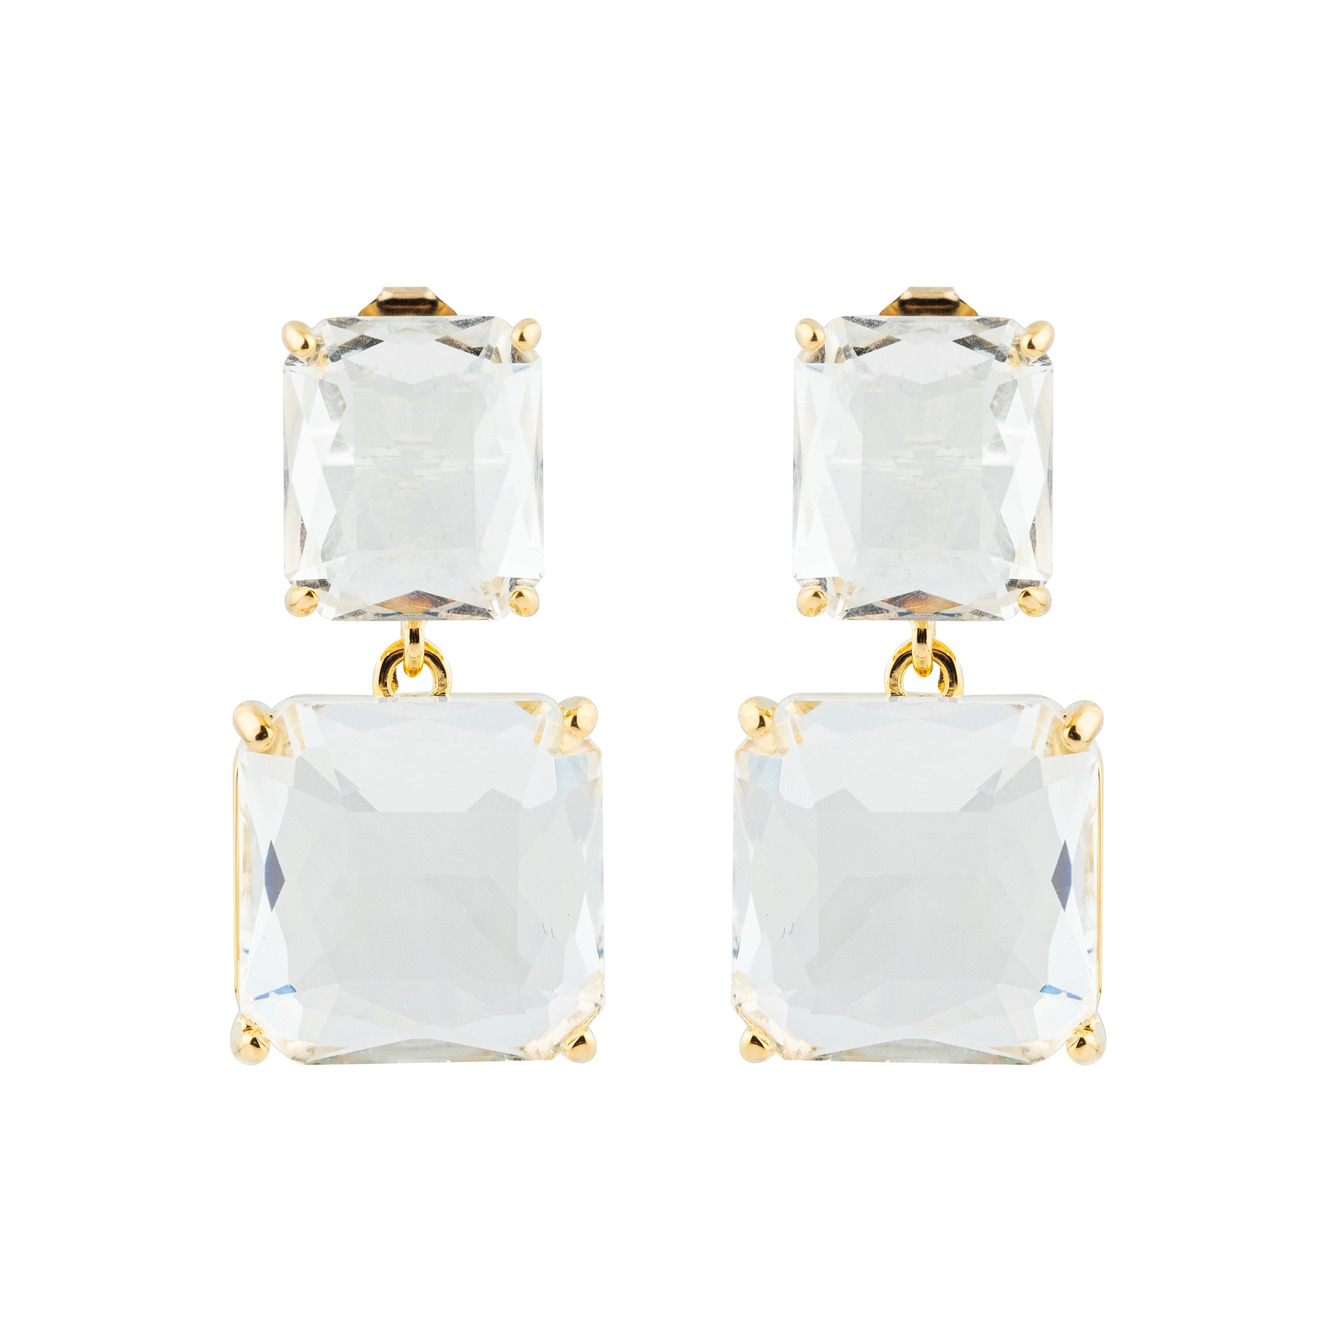 Herald Percy Двойные золотистые серьги с белыми кристаллами herald percy золотистые серьги полукруги с кристаллами